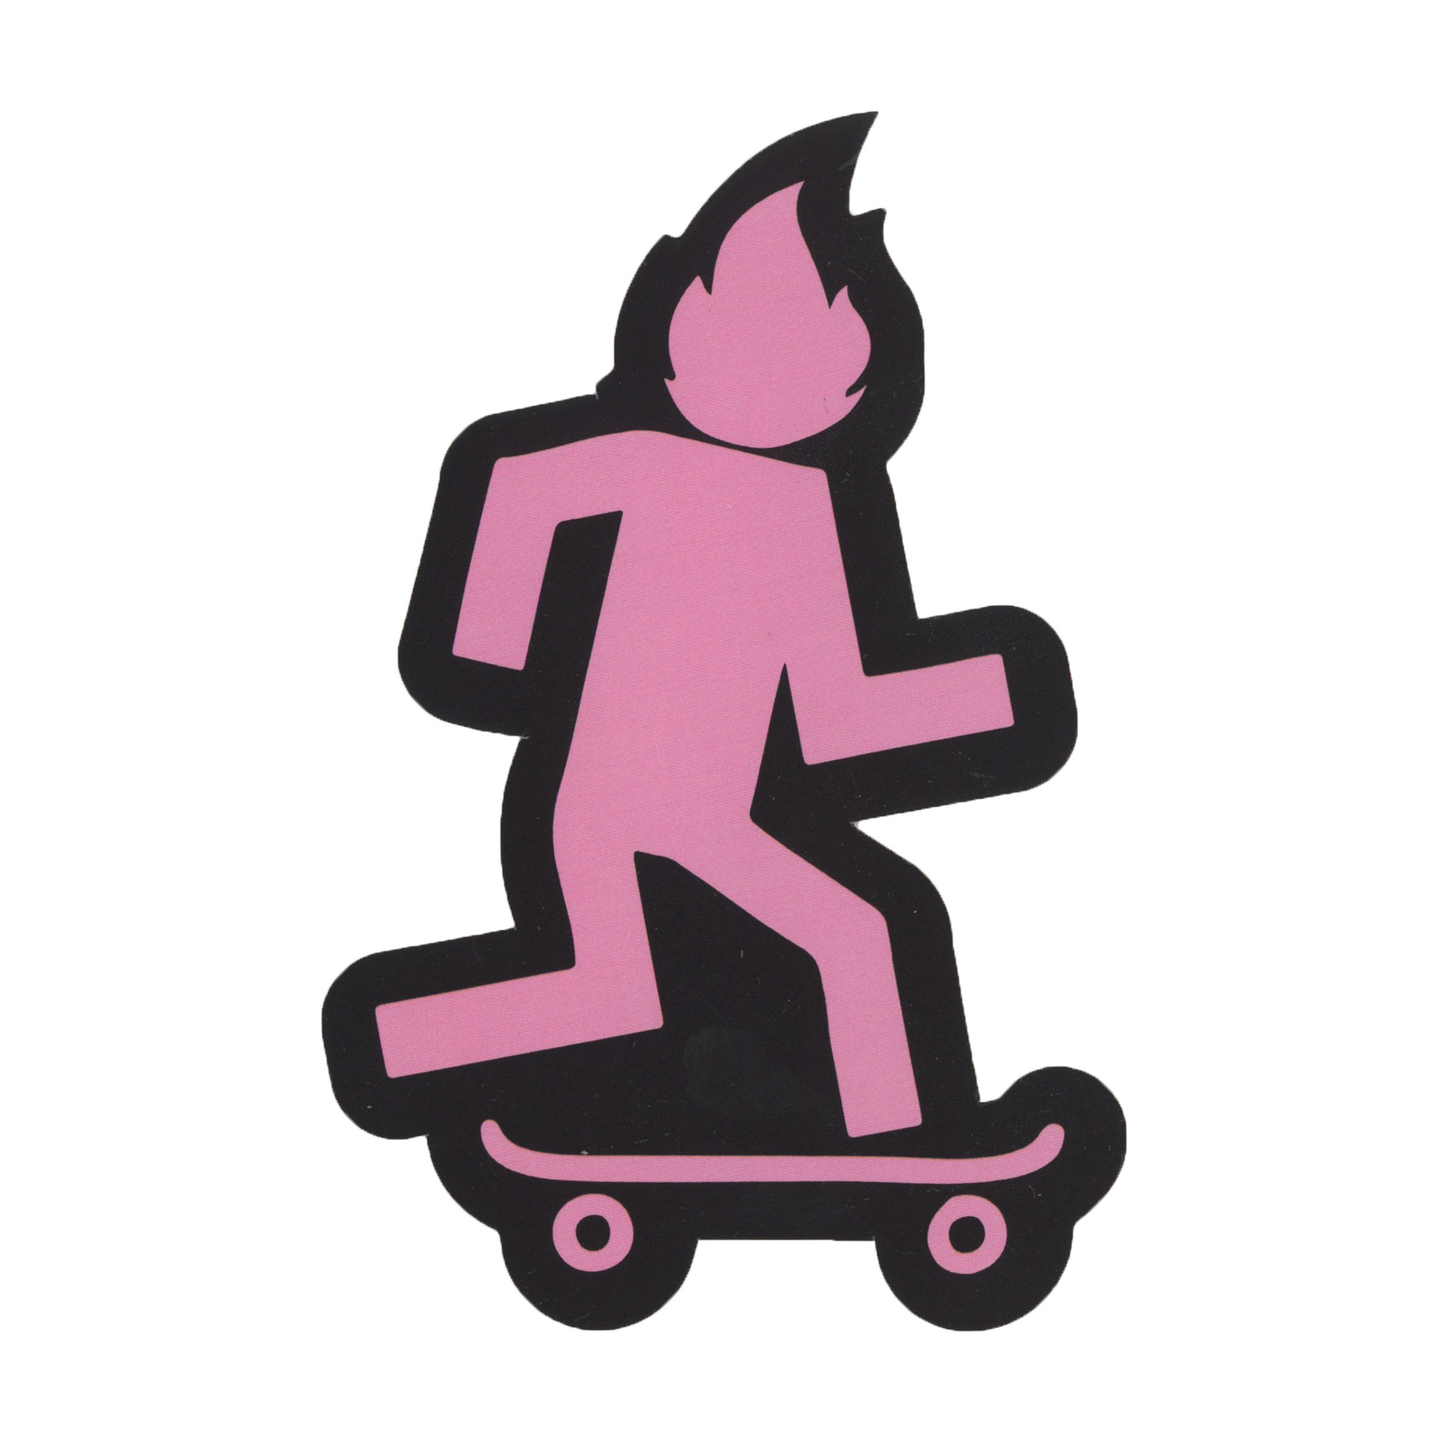 Travis Scott x Nike SB x Cactus Jack Skateboarder Sticker